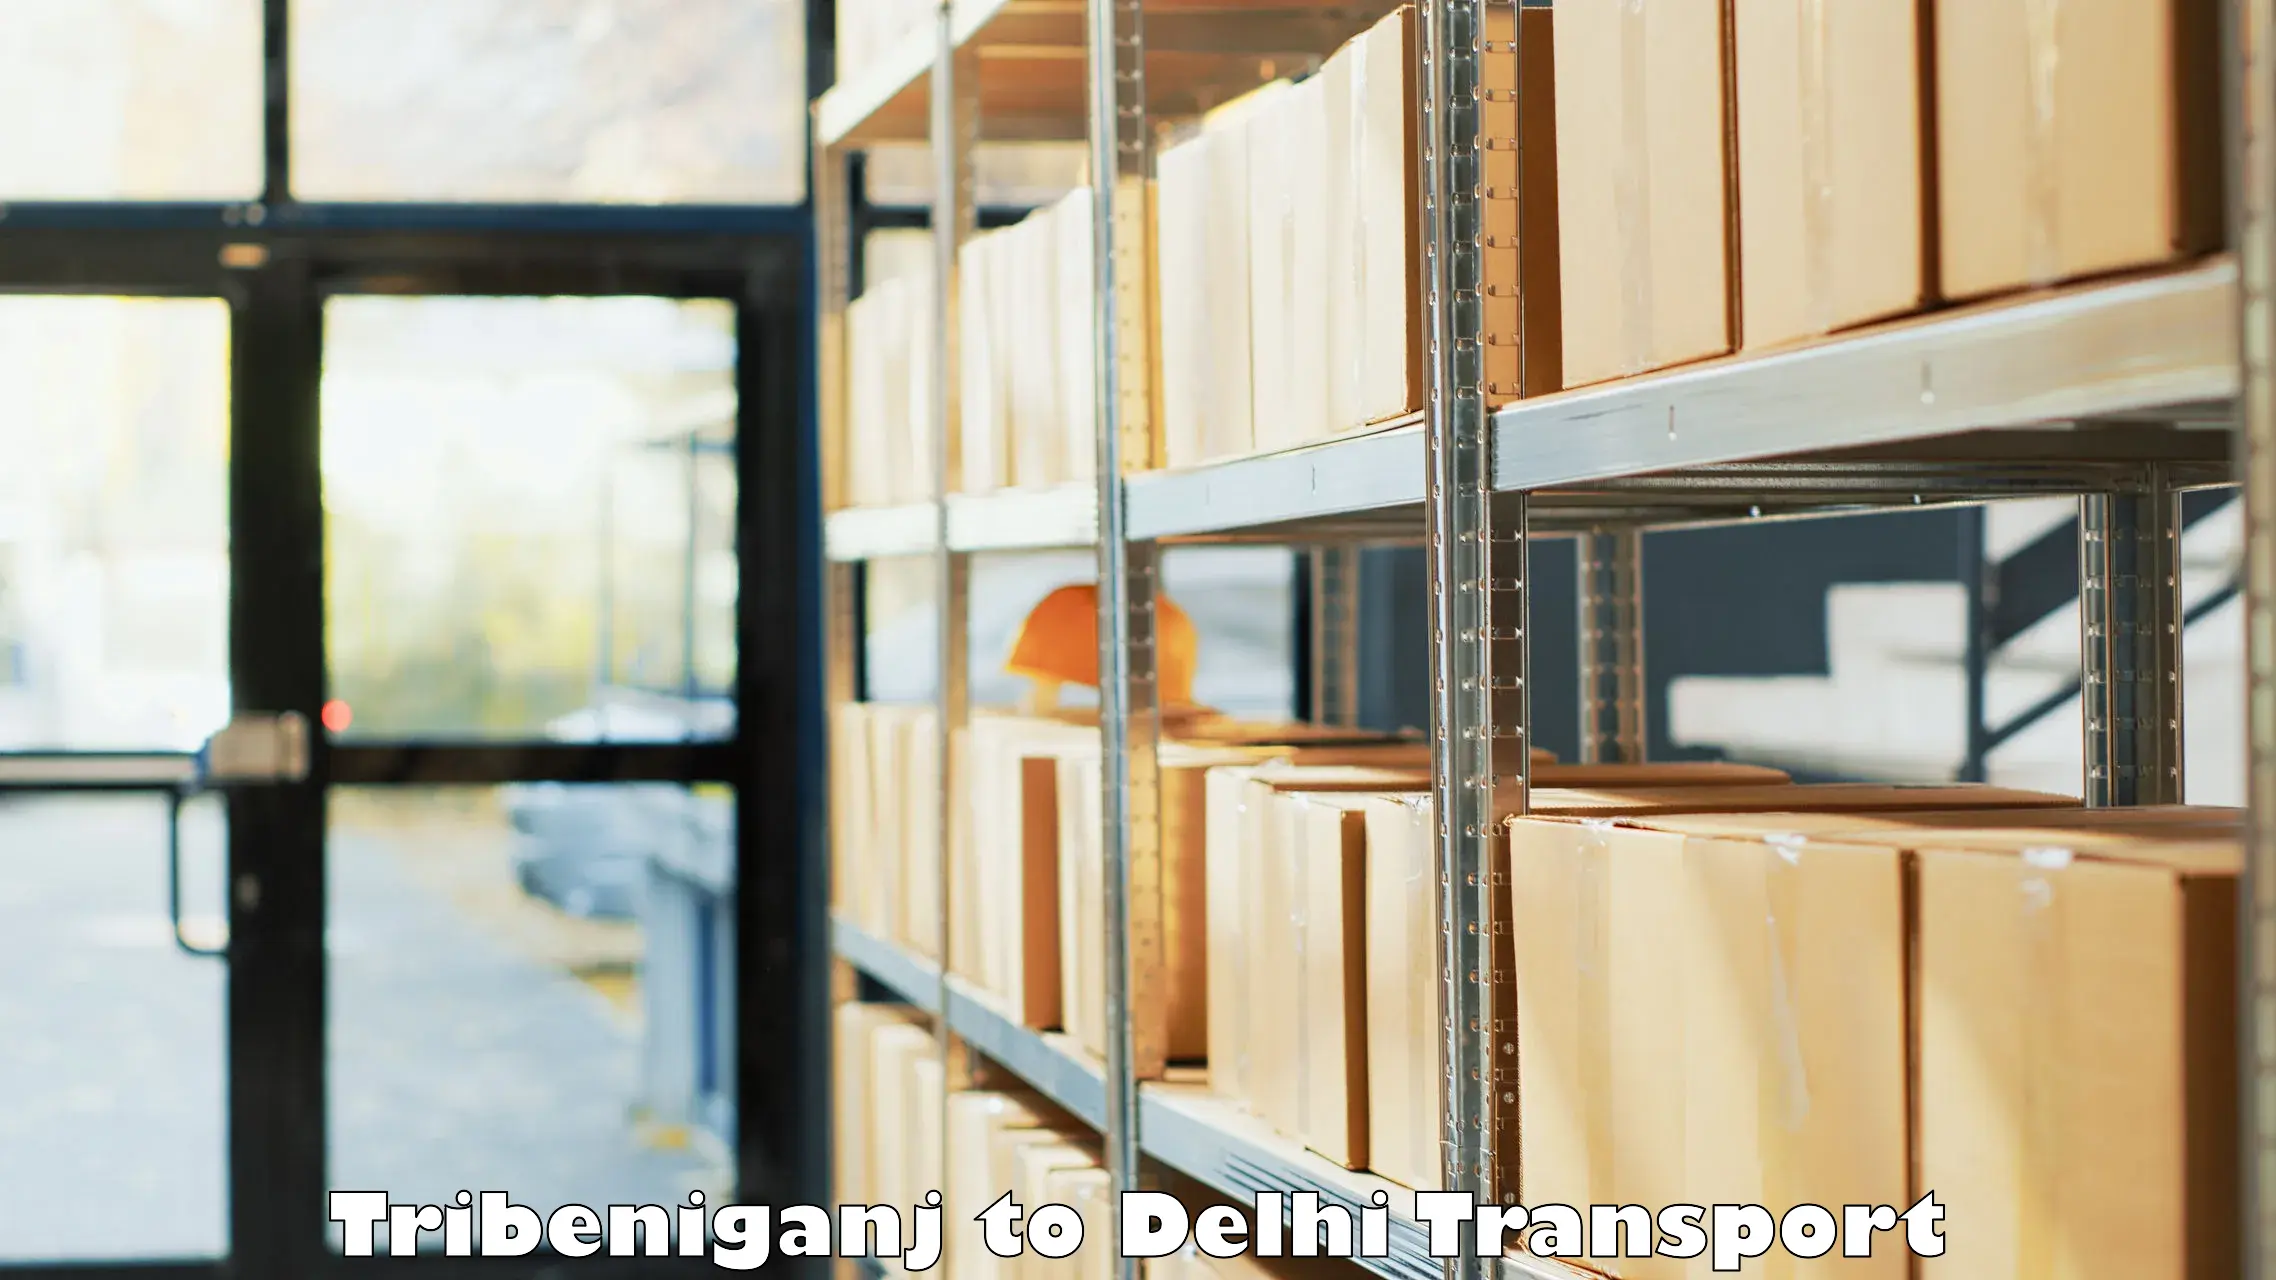 Bike transfer in Tribeniganj to East Delhi